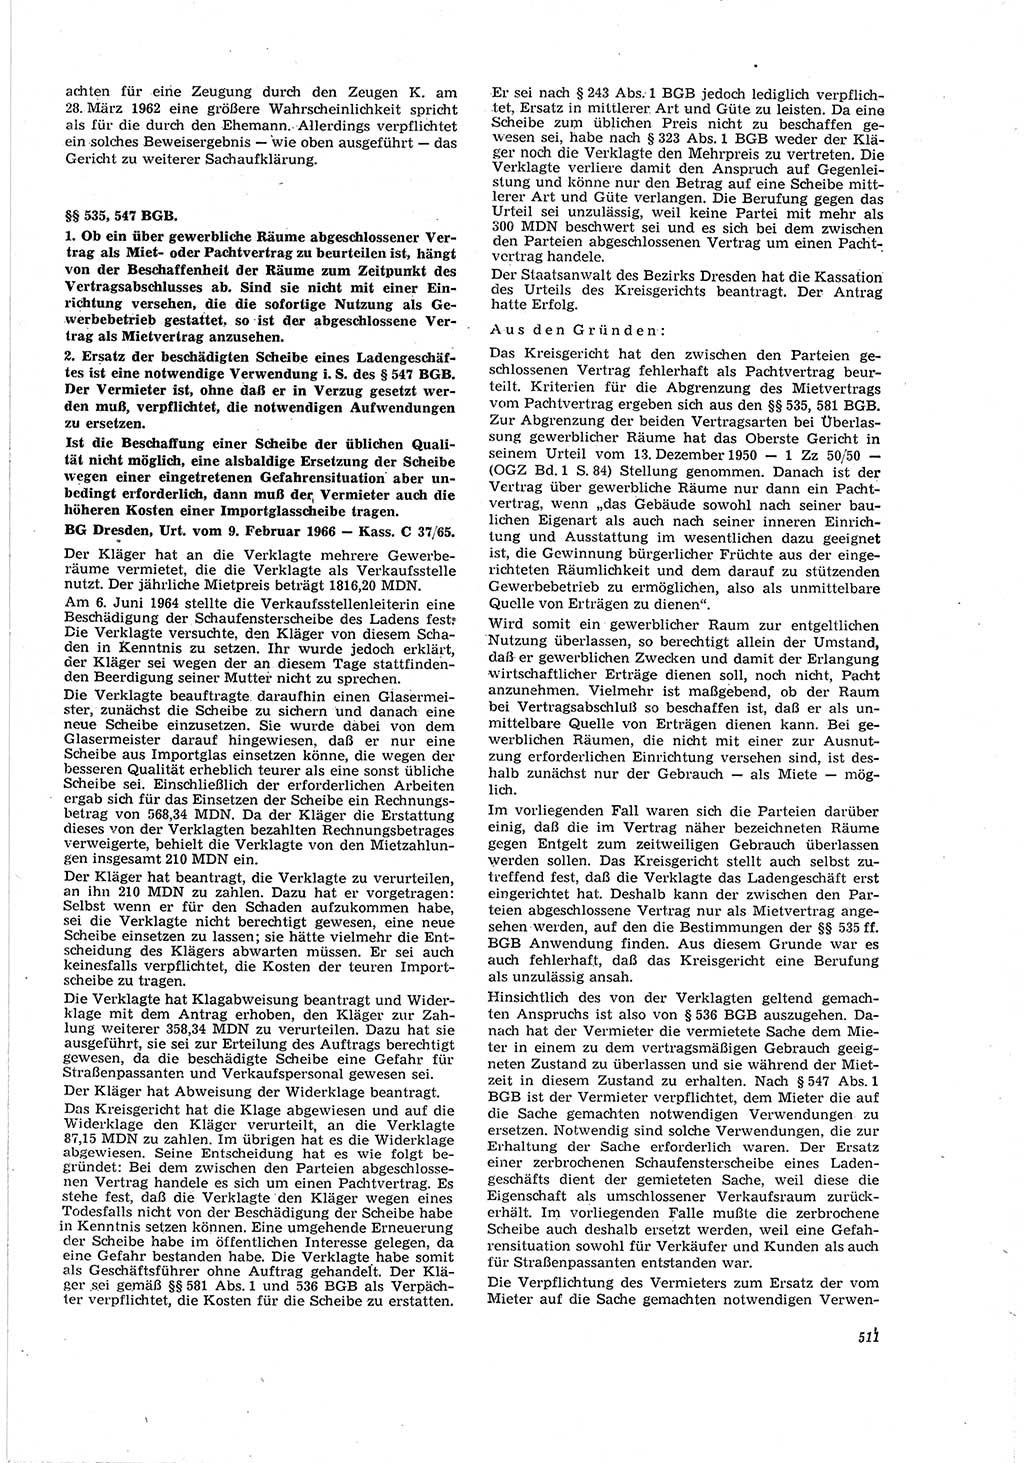 Neue Justiz (NJ), Zeitschrift für Recht und Rechtswissenschaft [Deutsche Demokratische Republik (DDR)], 20. Jahrgang 1966, Seite 511 (NJ DDR 1966, S. 511)